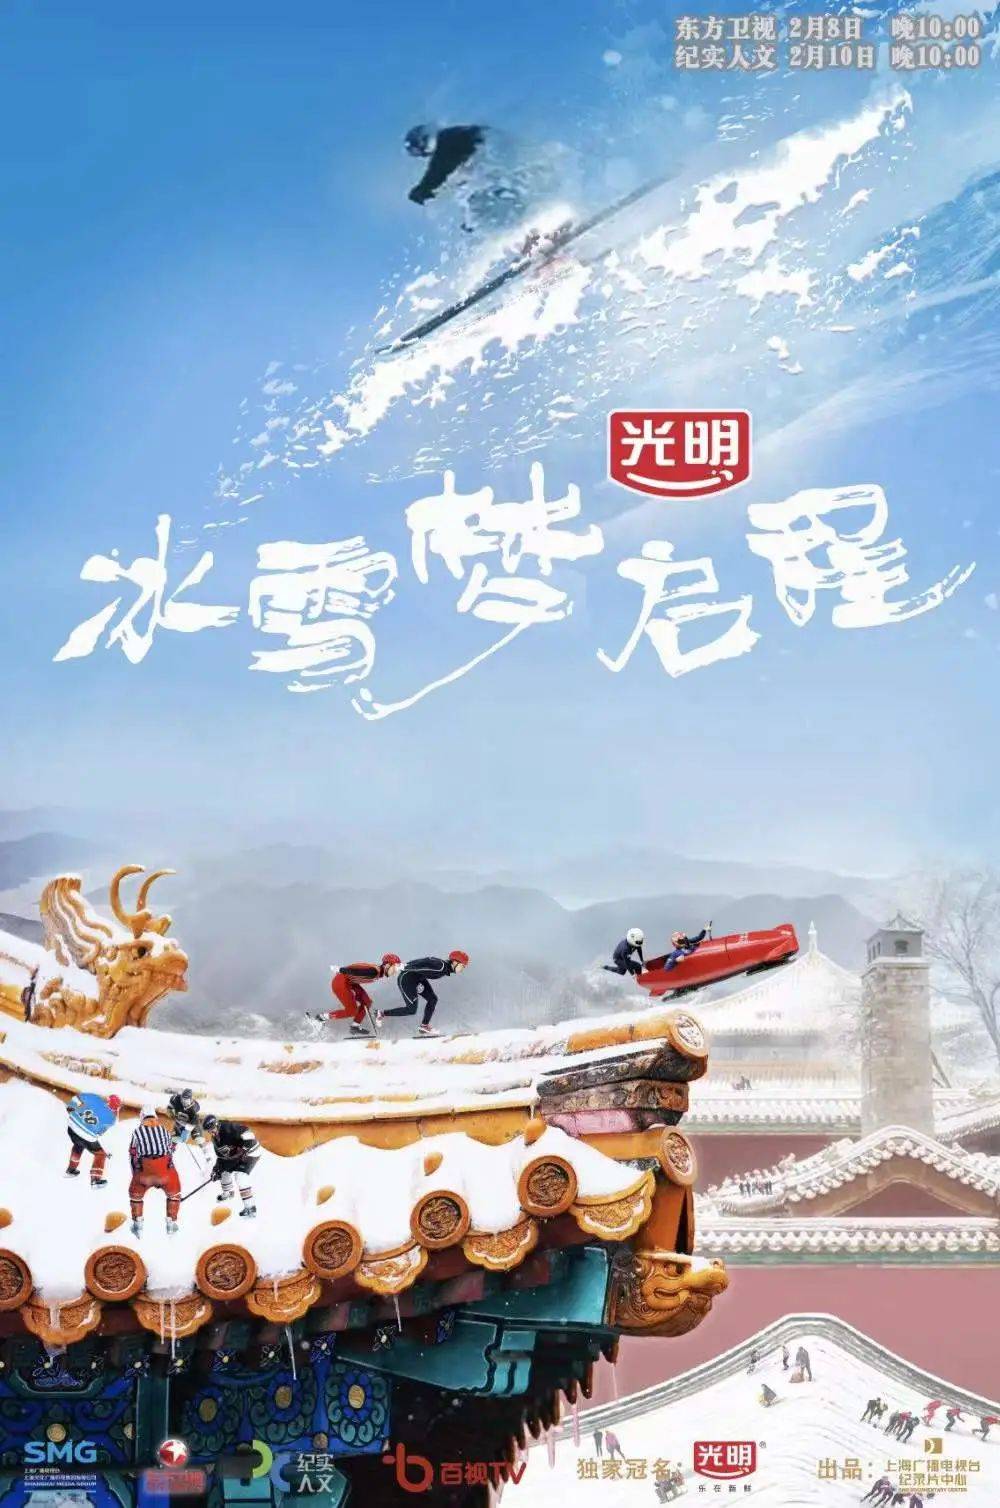 魅力|展现冰雪运动赛场外的魅力——上海出品冬奥主题纪录片《冰雪梦启程》今晚播出